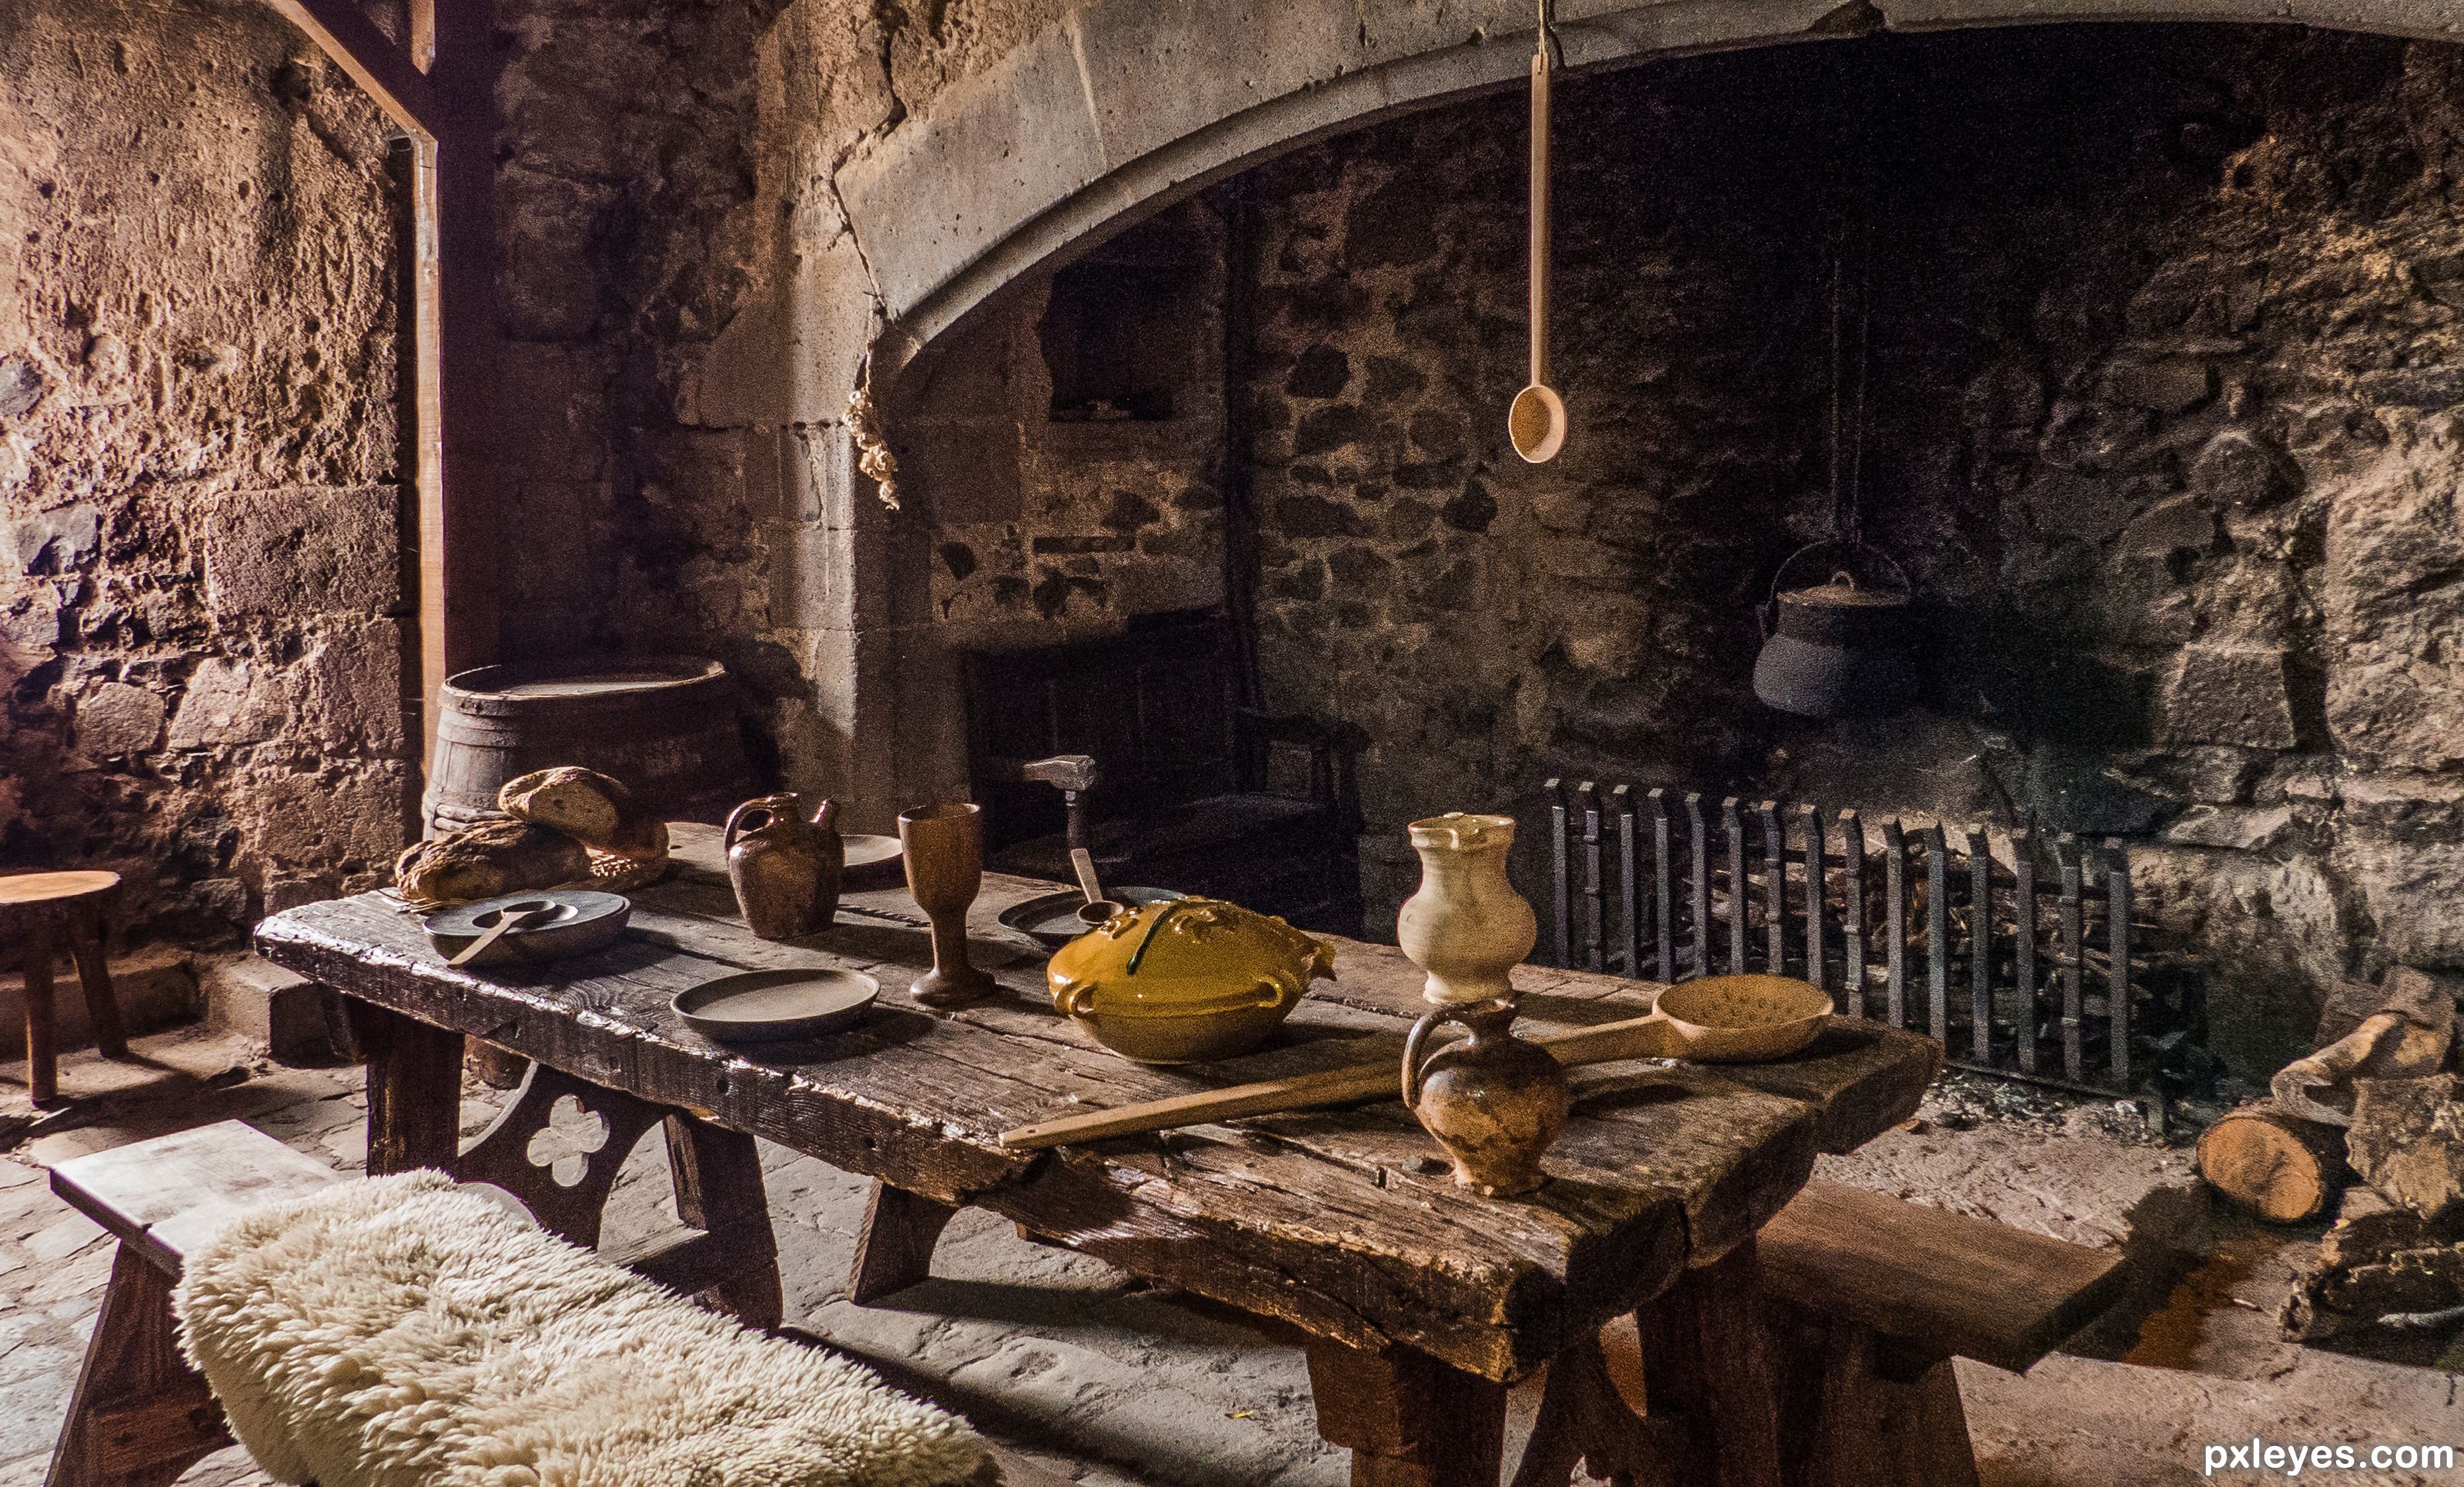 Быт 3 20. Таверна харчевня средние века кухня. Зал харчевни с очагом Франция 17 век. Трактир Англия 18 век. Таверна 15 век.